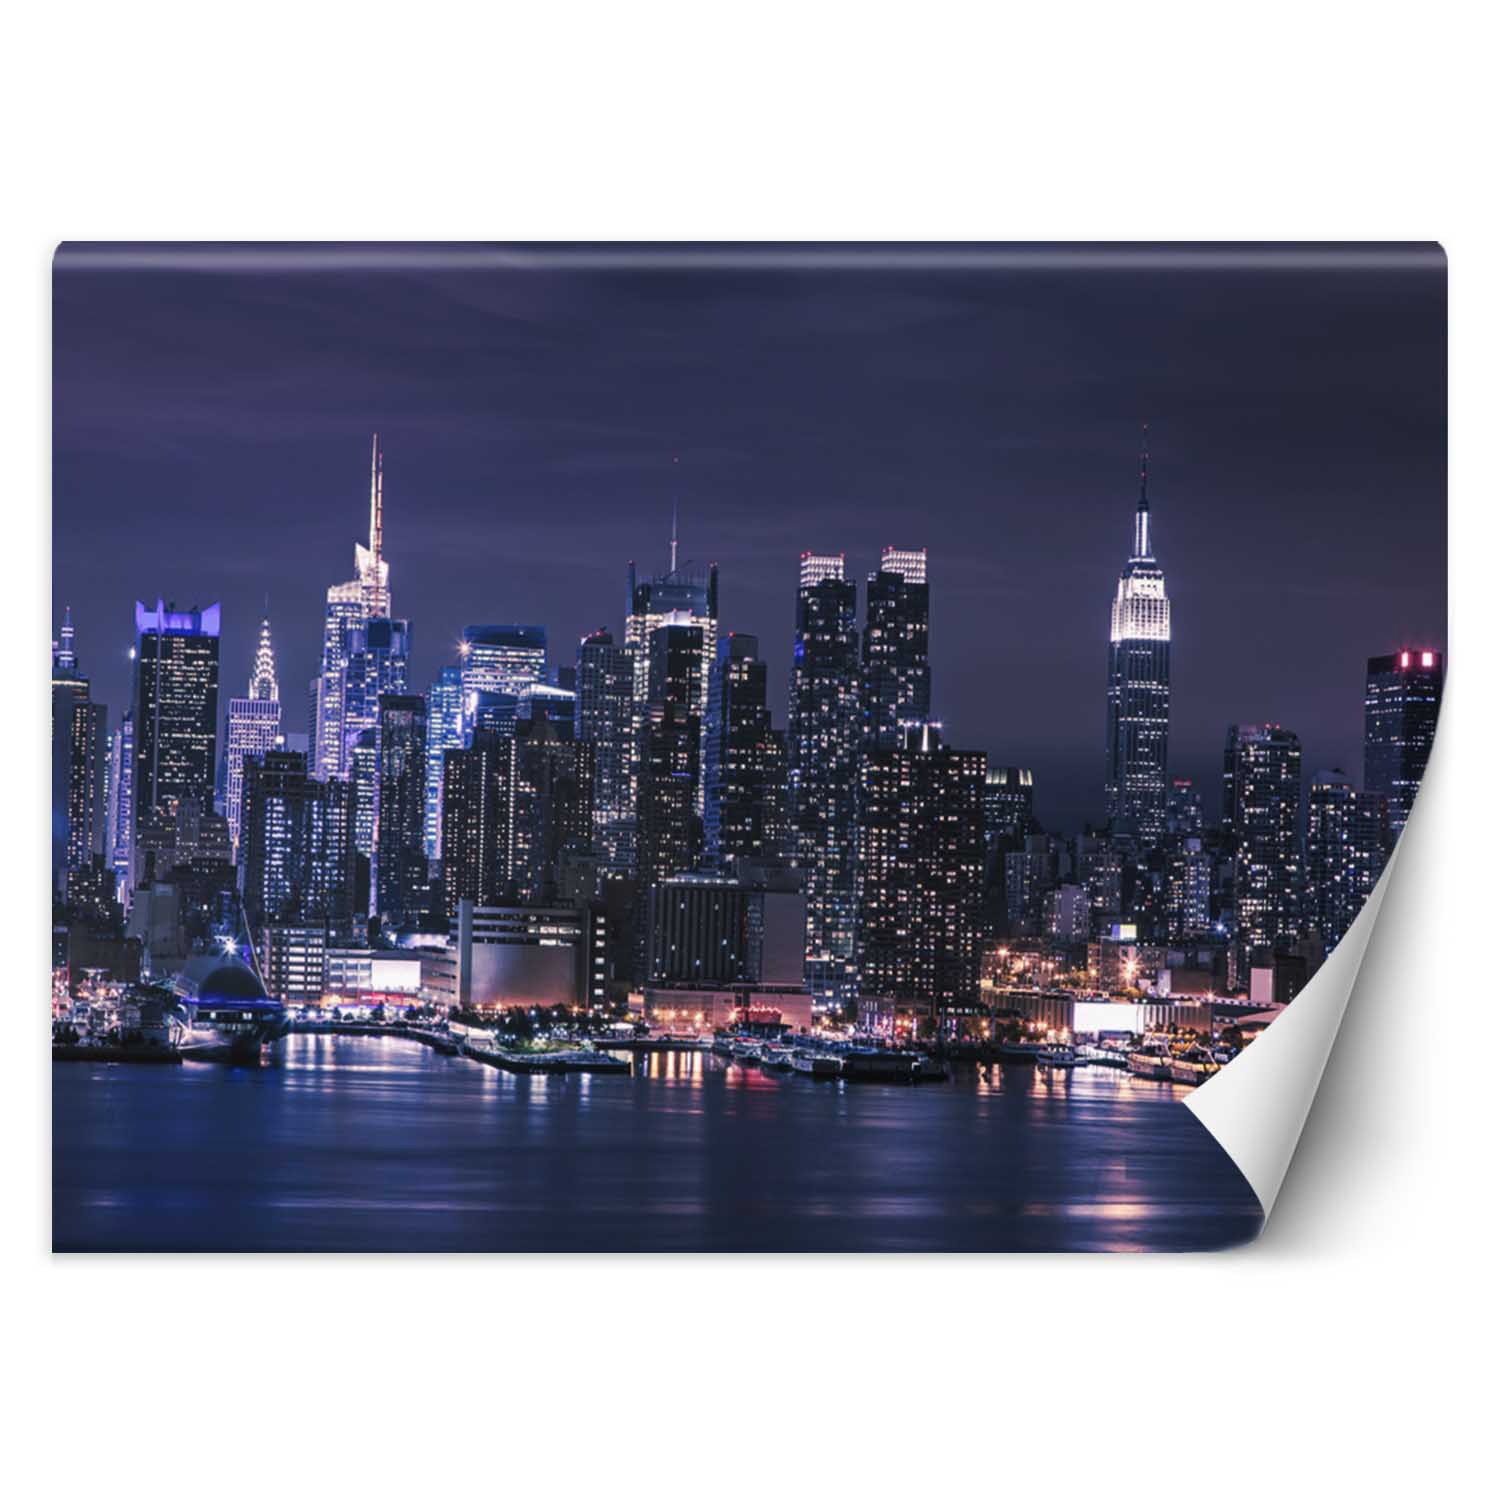 Trend24 – Behang – New York ‘S Nachts – Vliesbehang – Fotobehang – Behang Woonkamer – 350×245 cm – Incl. behanglijm